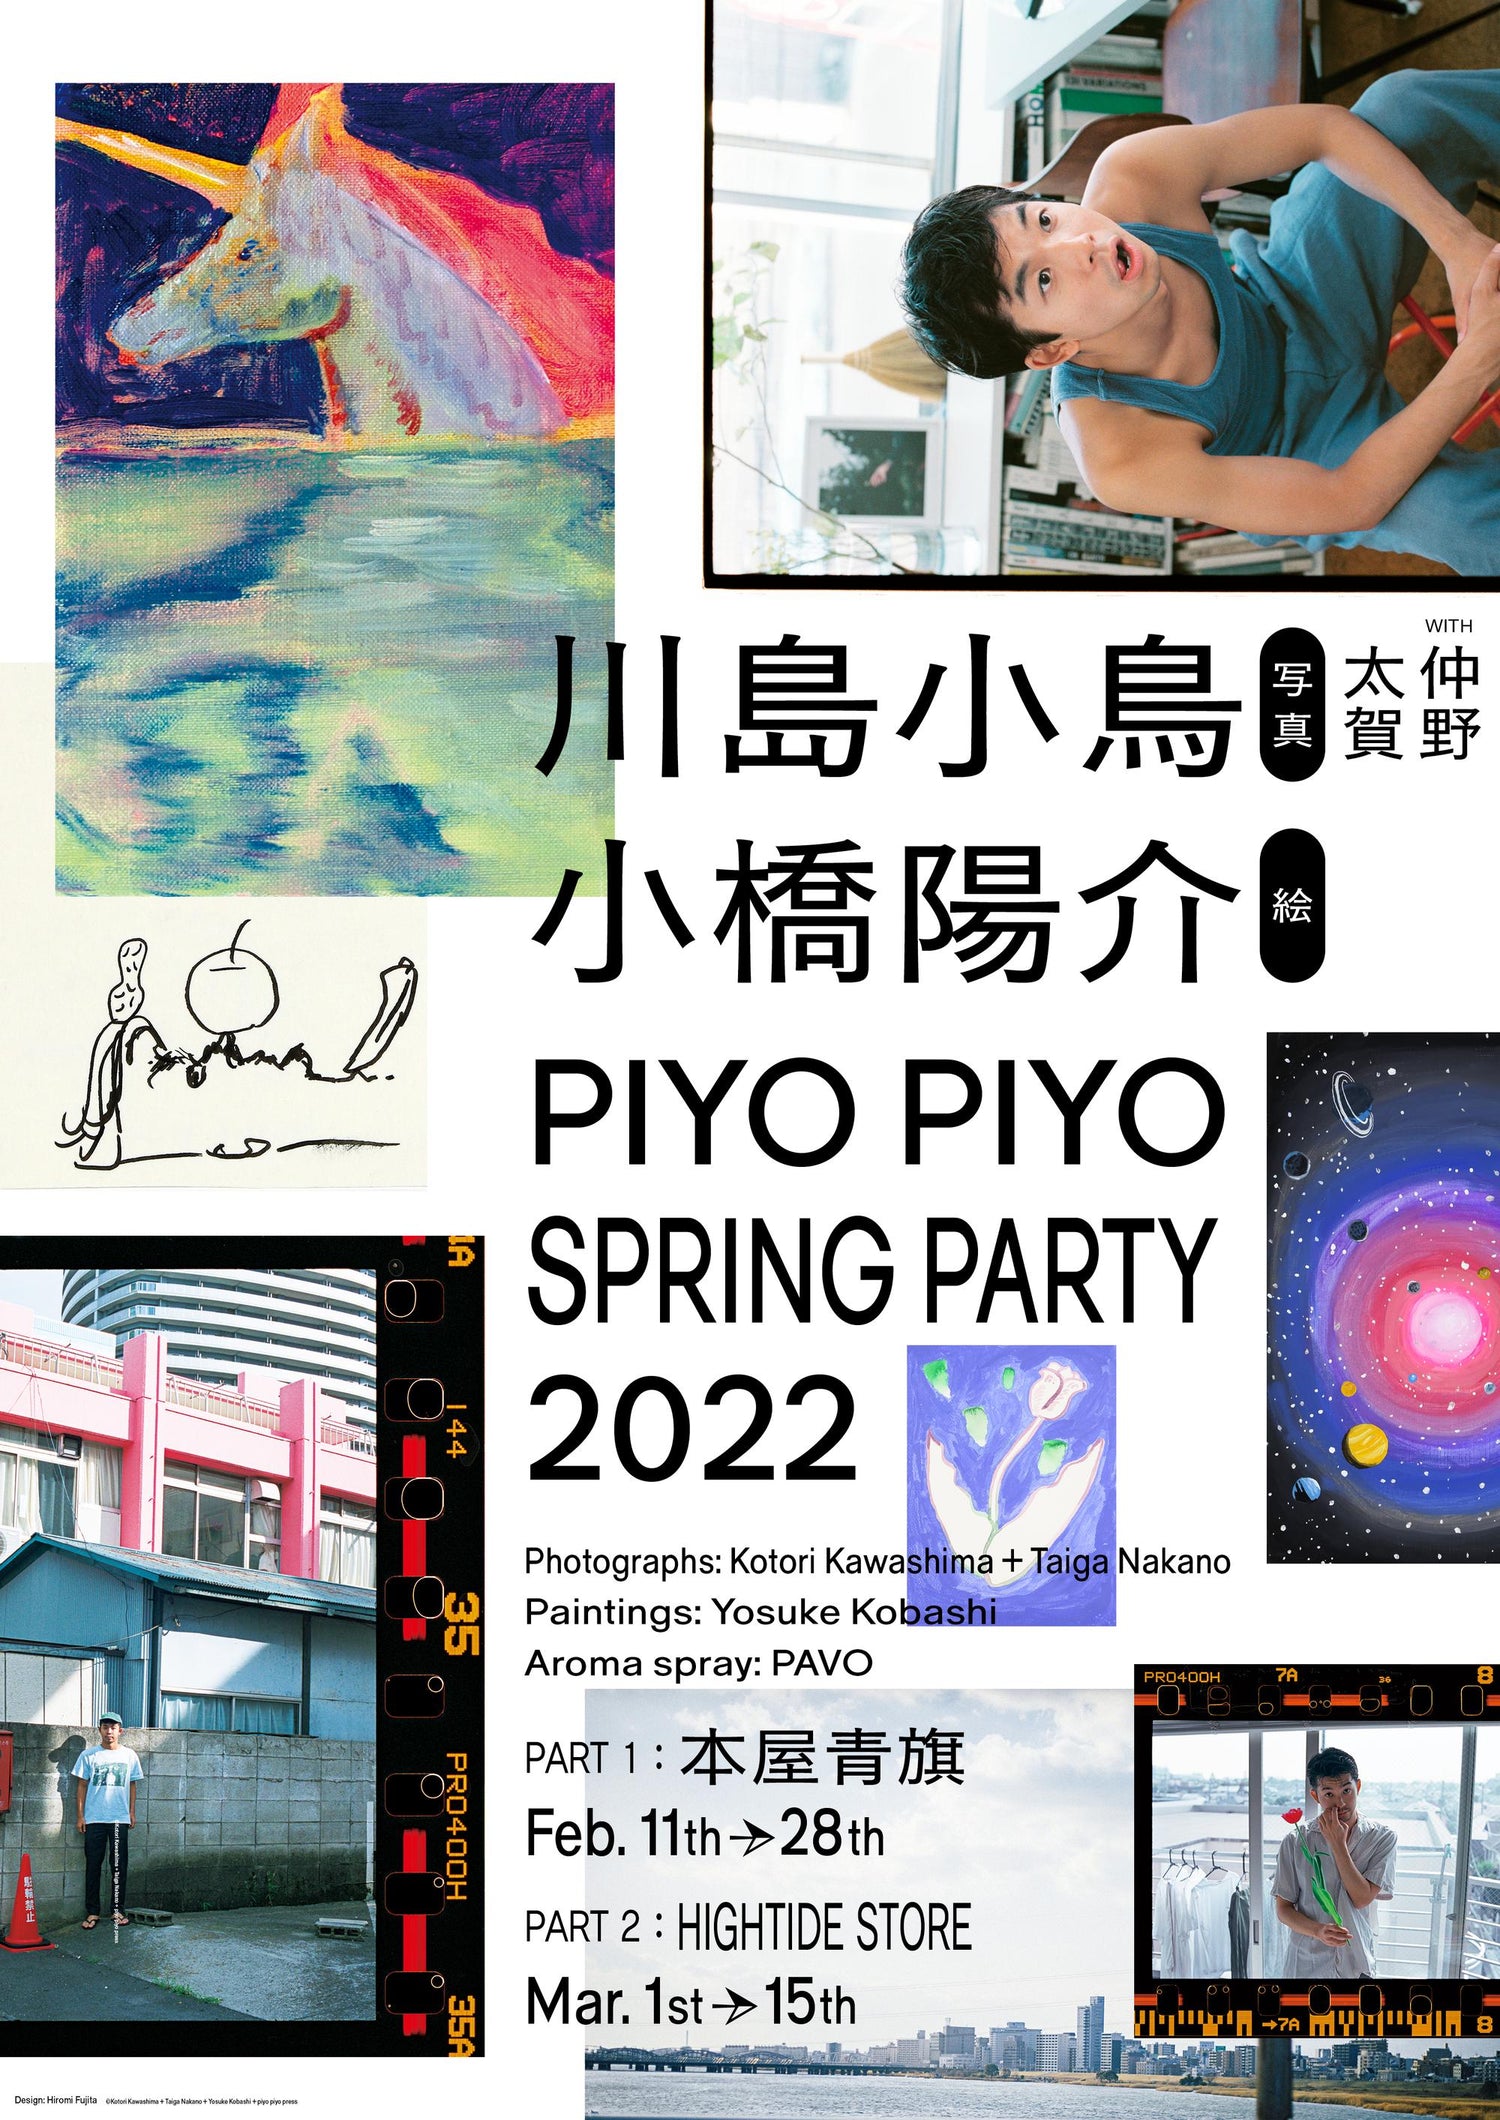 PIYO PIYO SPRING PARTY 2022